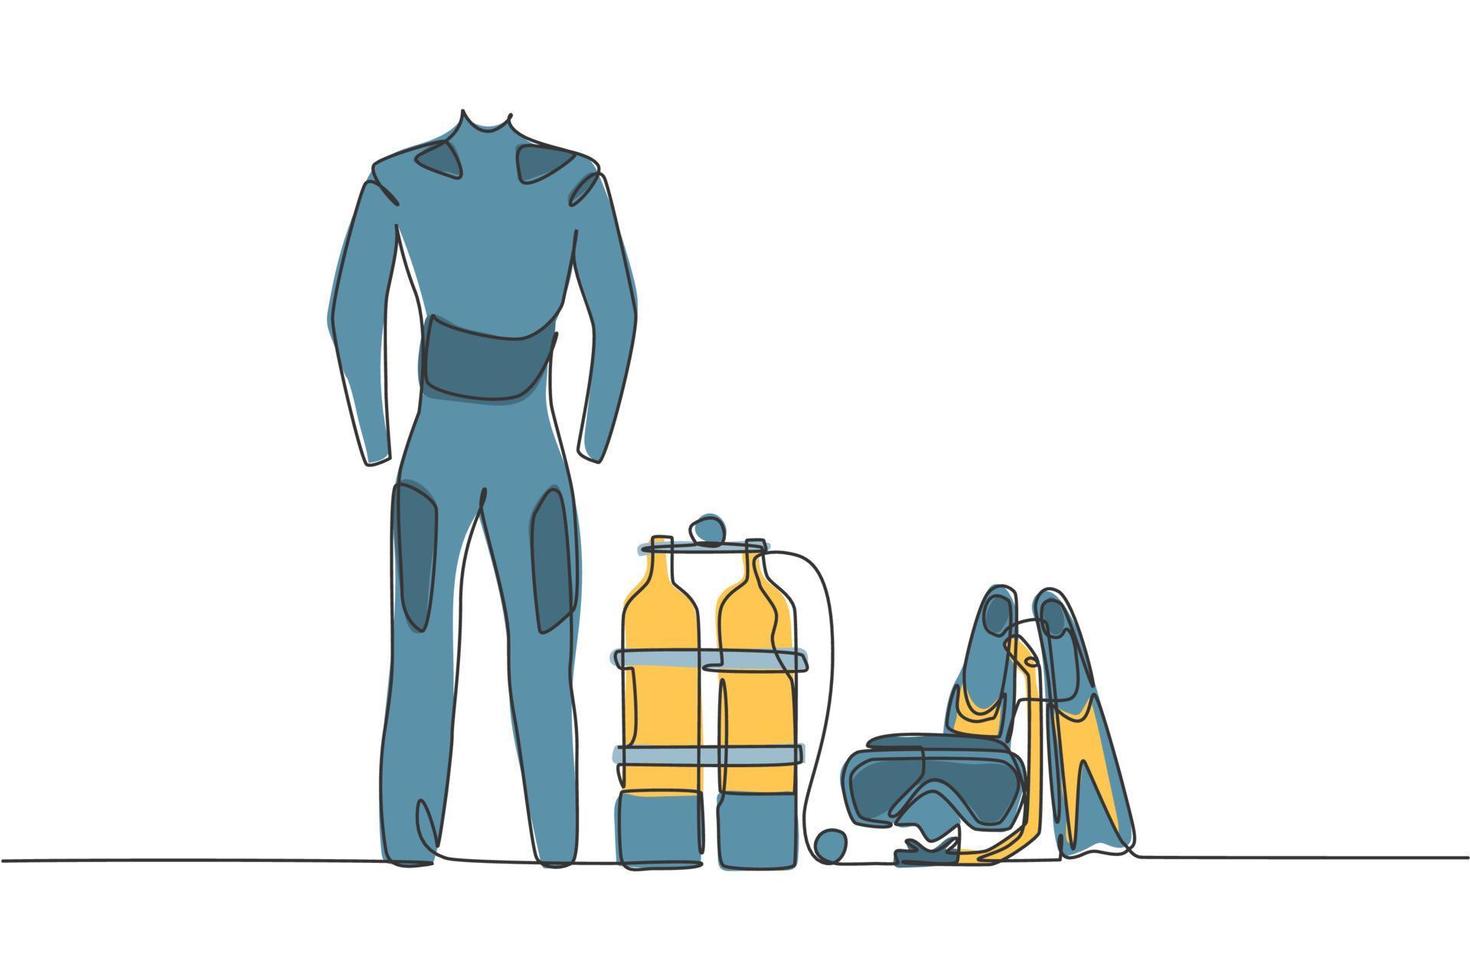 único desenho de linha contínua de roupa de mergulho, roupa de banho, regulador, oxigênio, máscara, snorkel, óculos e nadadeiras. conceito de ferramentas de equipamento de mergulho esportivo subaquático. ilustração vetorial de design de desenho de uma linha vetor